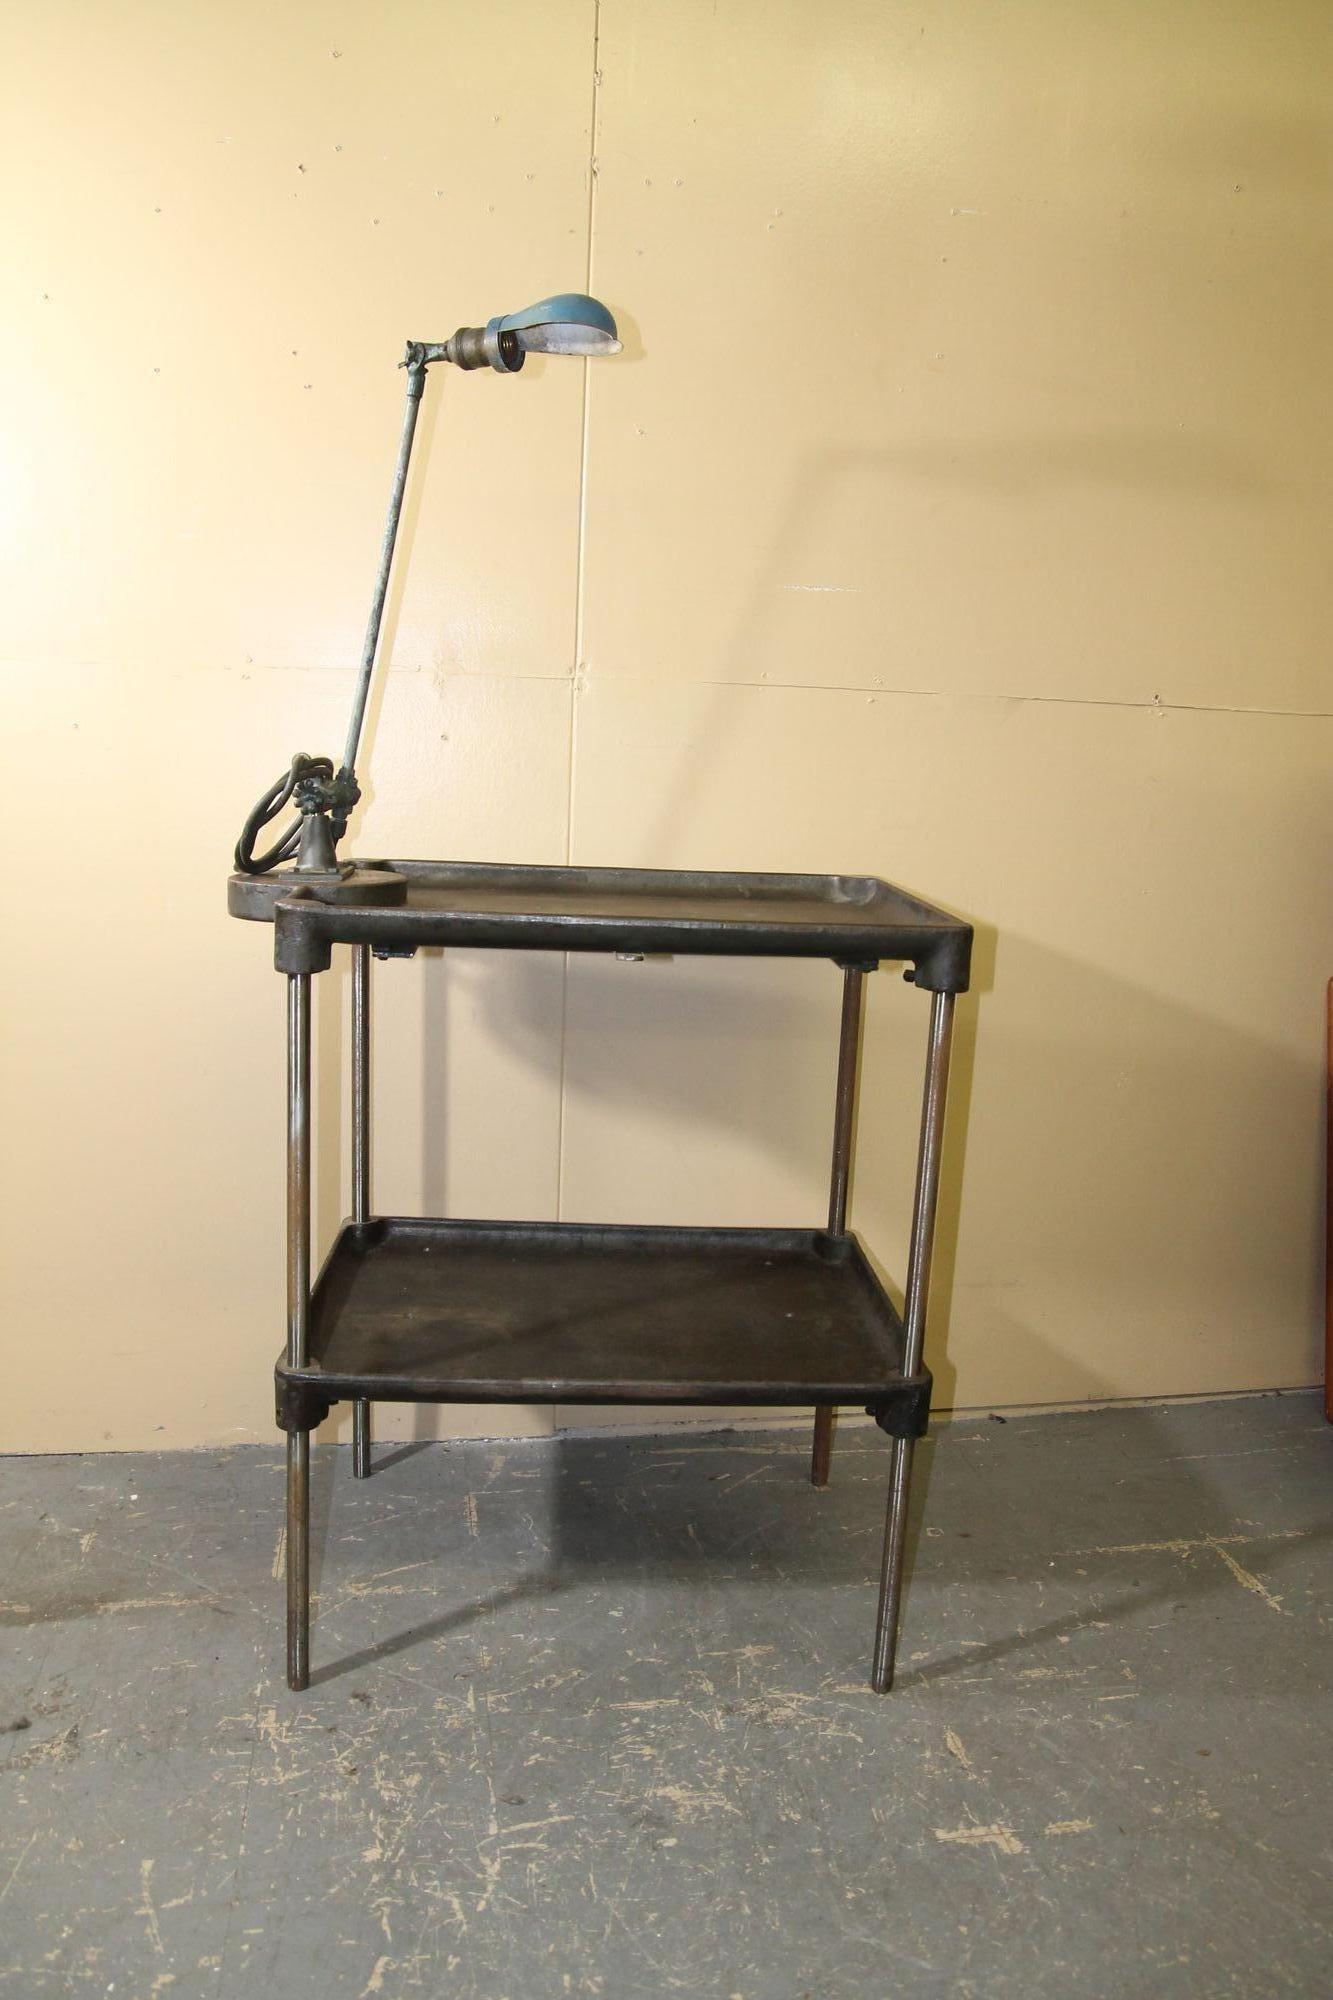 J'ai le plaisir de vous proposer cette superbe table de travail en métal avec une lampe de travail OC Whiting fixée dessus. Ces tables, qui ont plus de 100 ans, proviennent d'une usine de vis dans l'Ohio. Elle fera une belle table d'appoint ou une